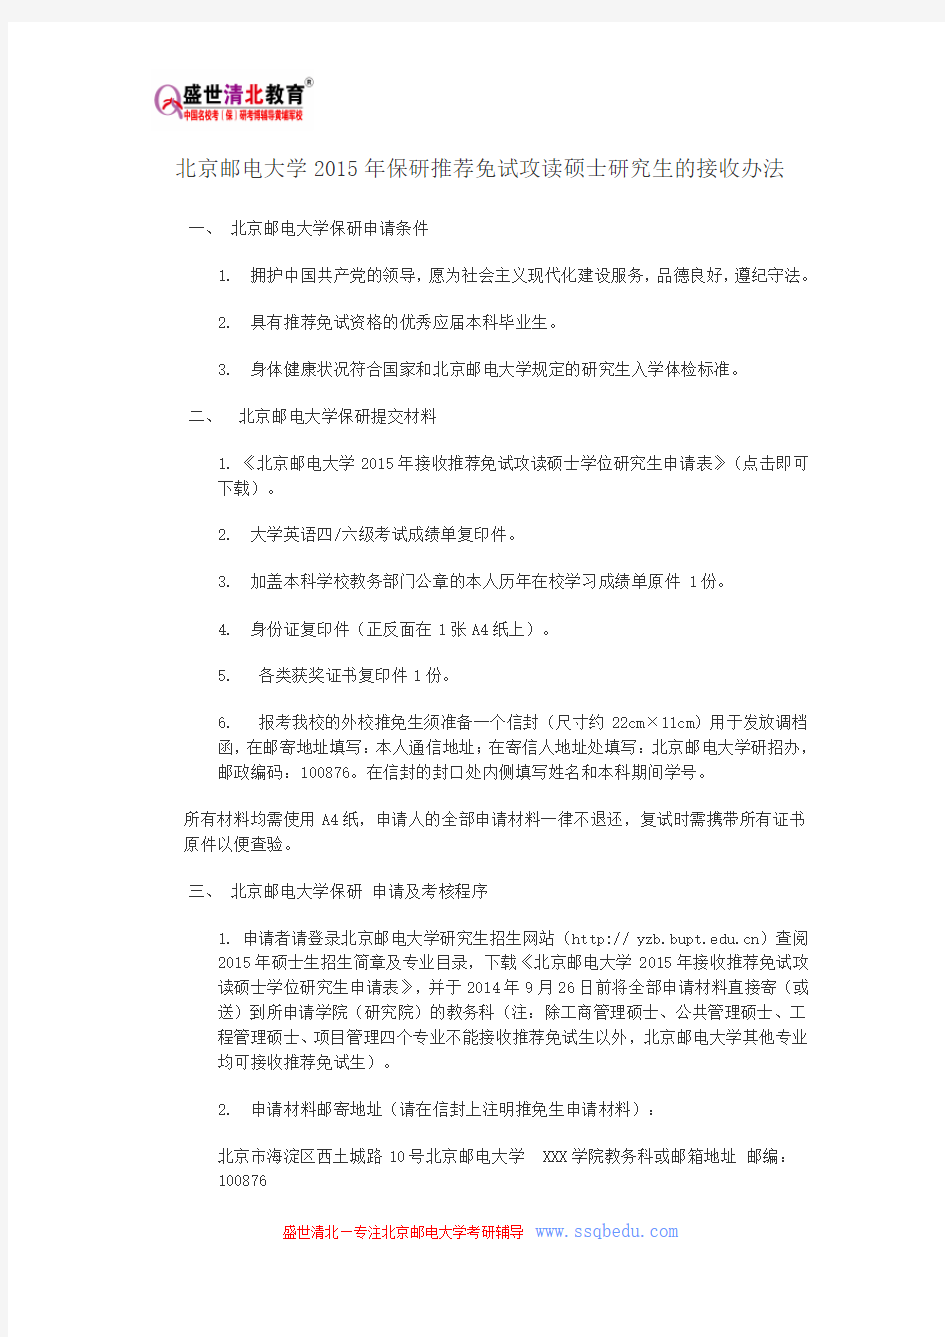 北京邮电大学2015年保研推荐免试攻读硕士研究生的接收办法